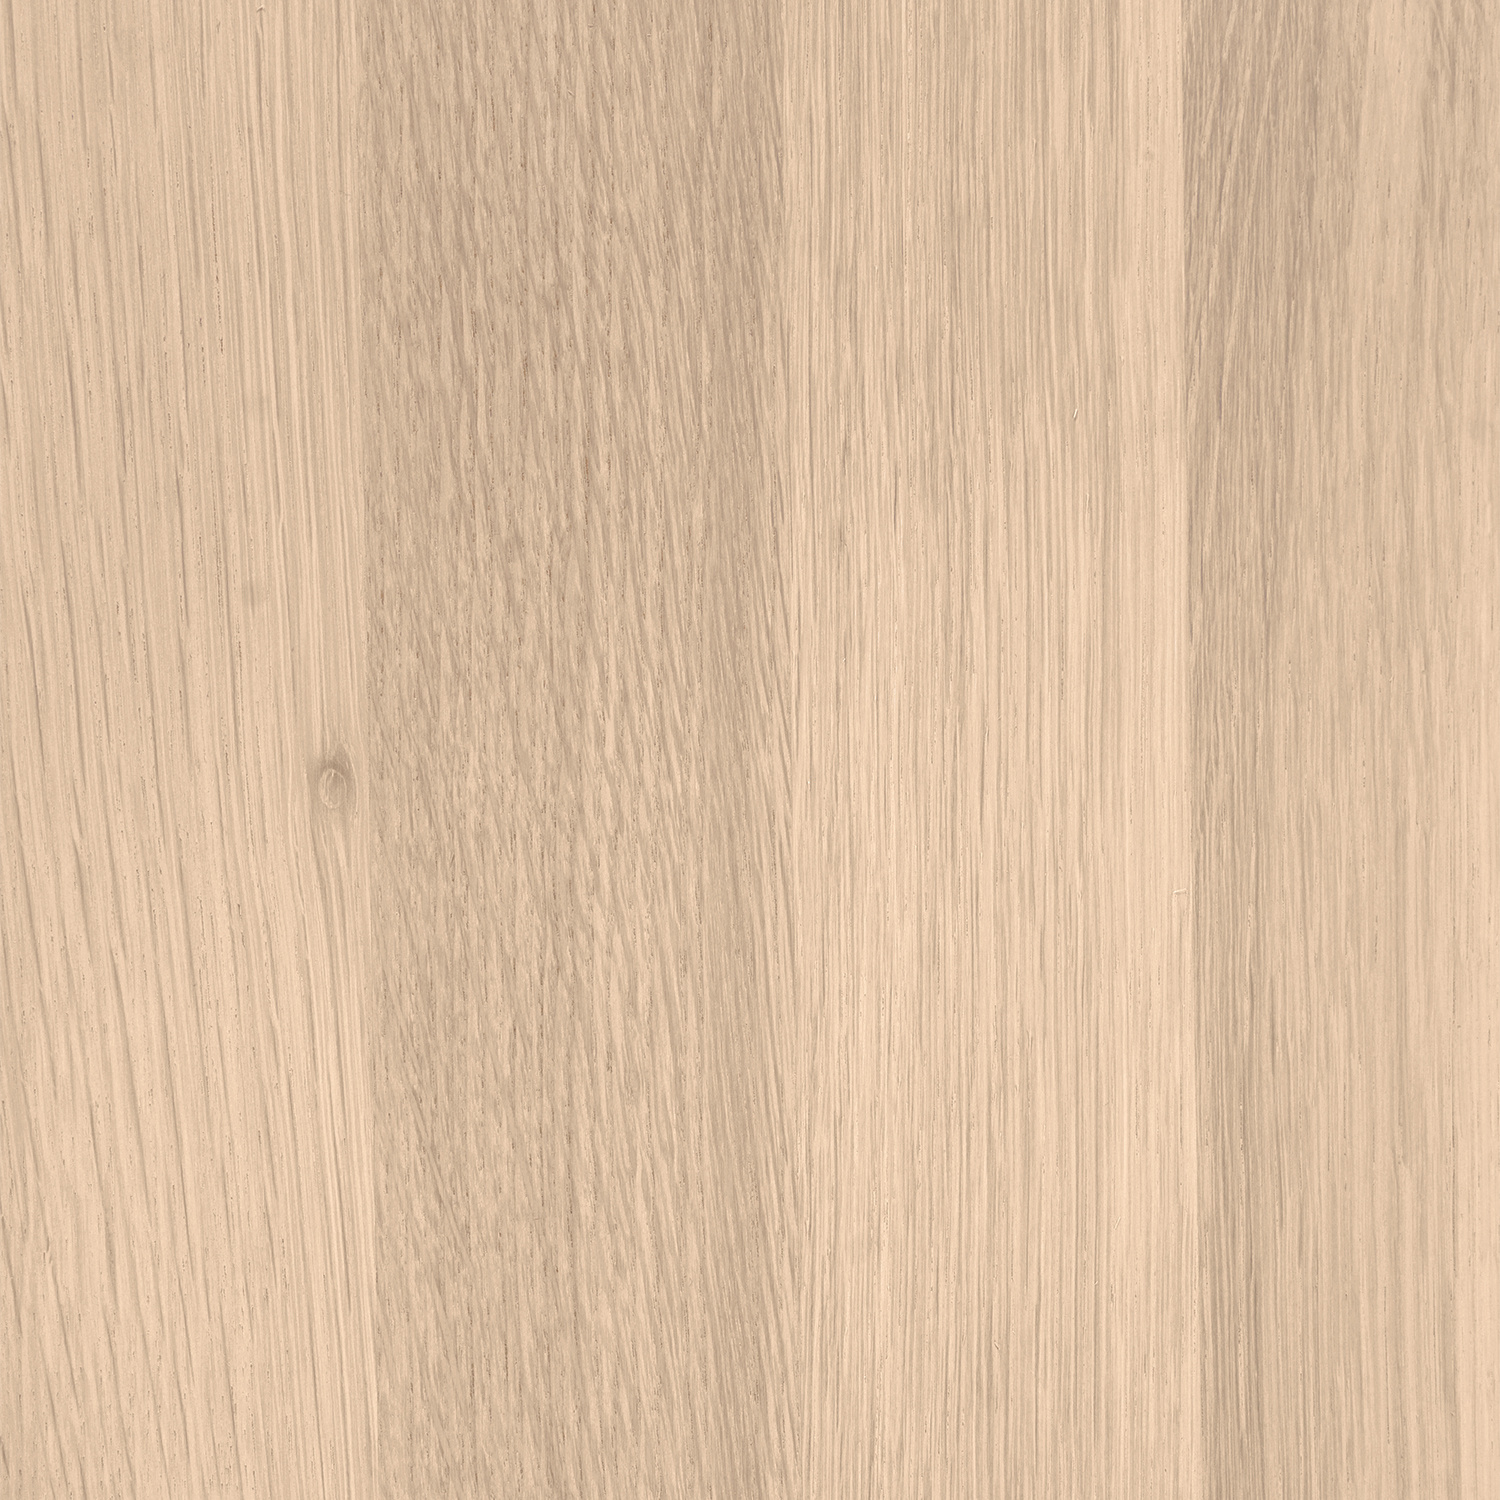  Leimholzplatte Eiche nach Maß - 2,5 cm dick - Eichenholz A-Qualität- Eiche Massivholzplatte - verleimt & künstlich getrocknet (HF 8-12%) - 15-120x20-350 cm